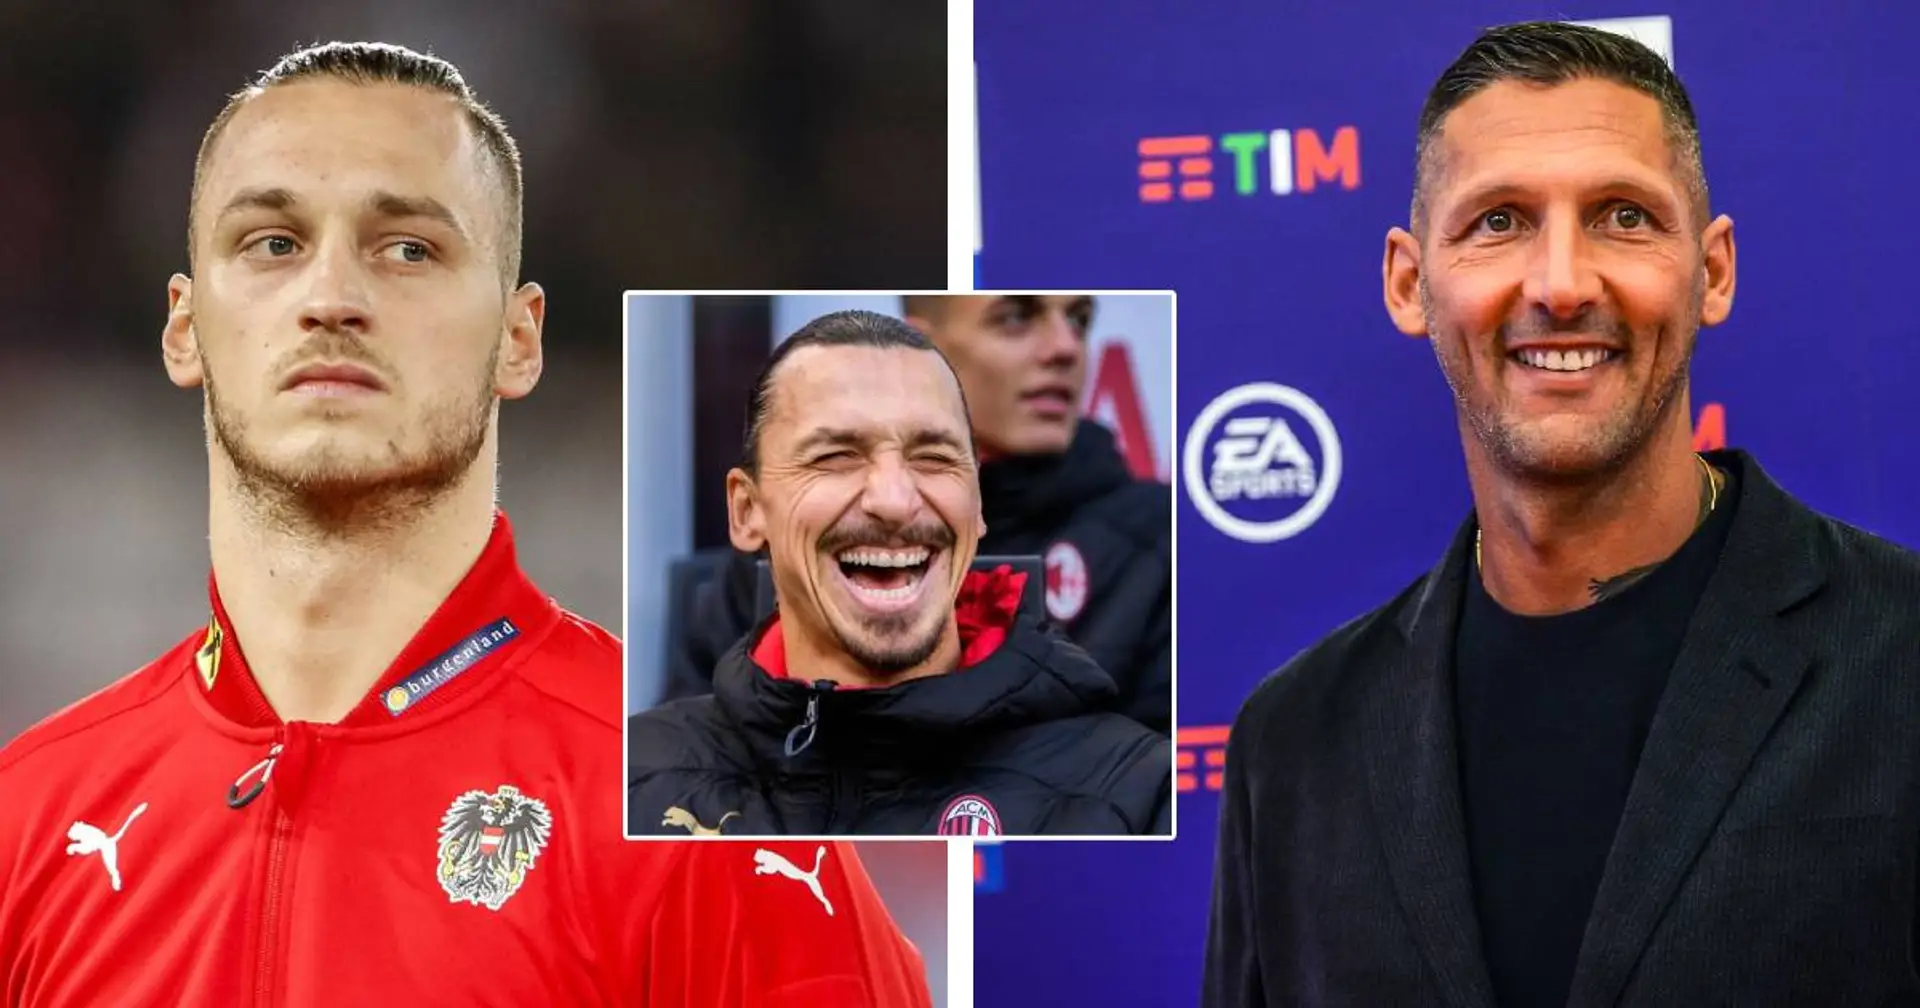 "Er meinte, er werde in sechs Monaten besser sein als Ibrahimovic": Materazzi erinnert sich an Skandal-Profi Arnautovic